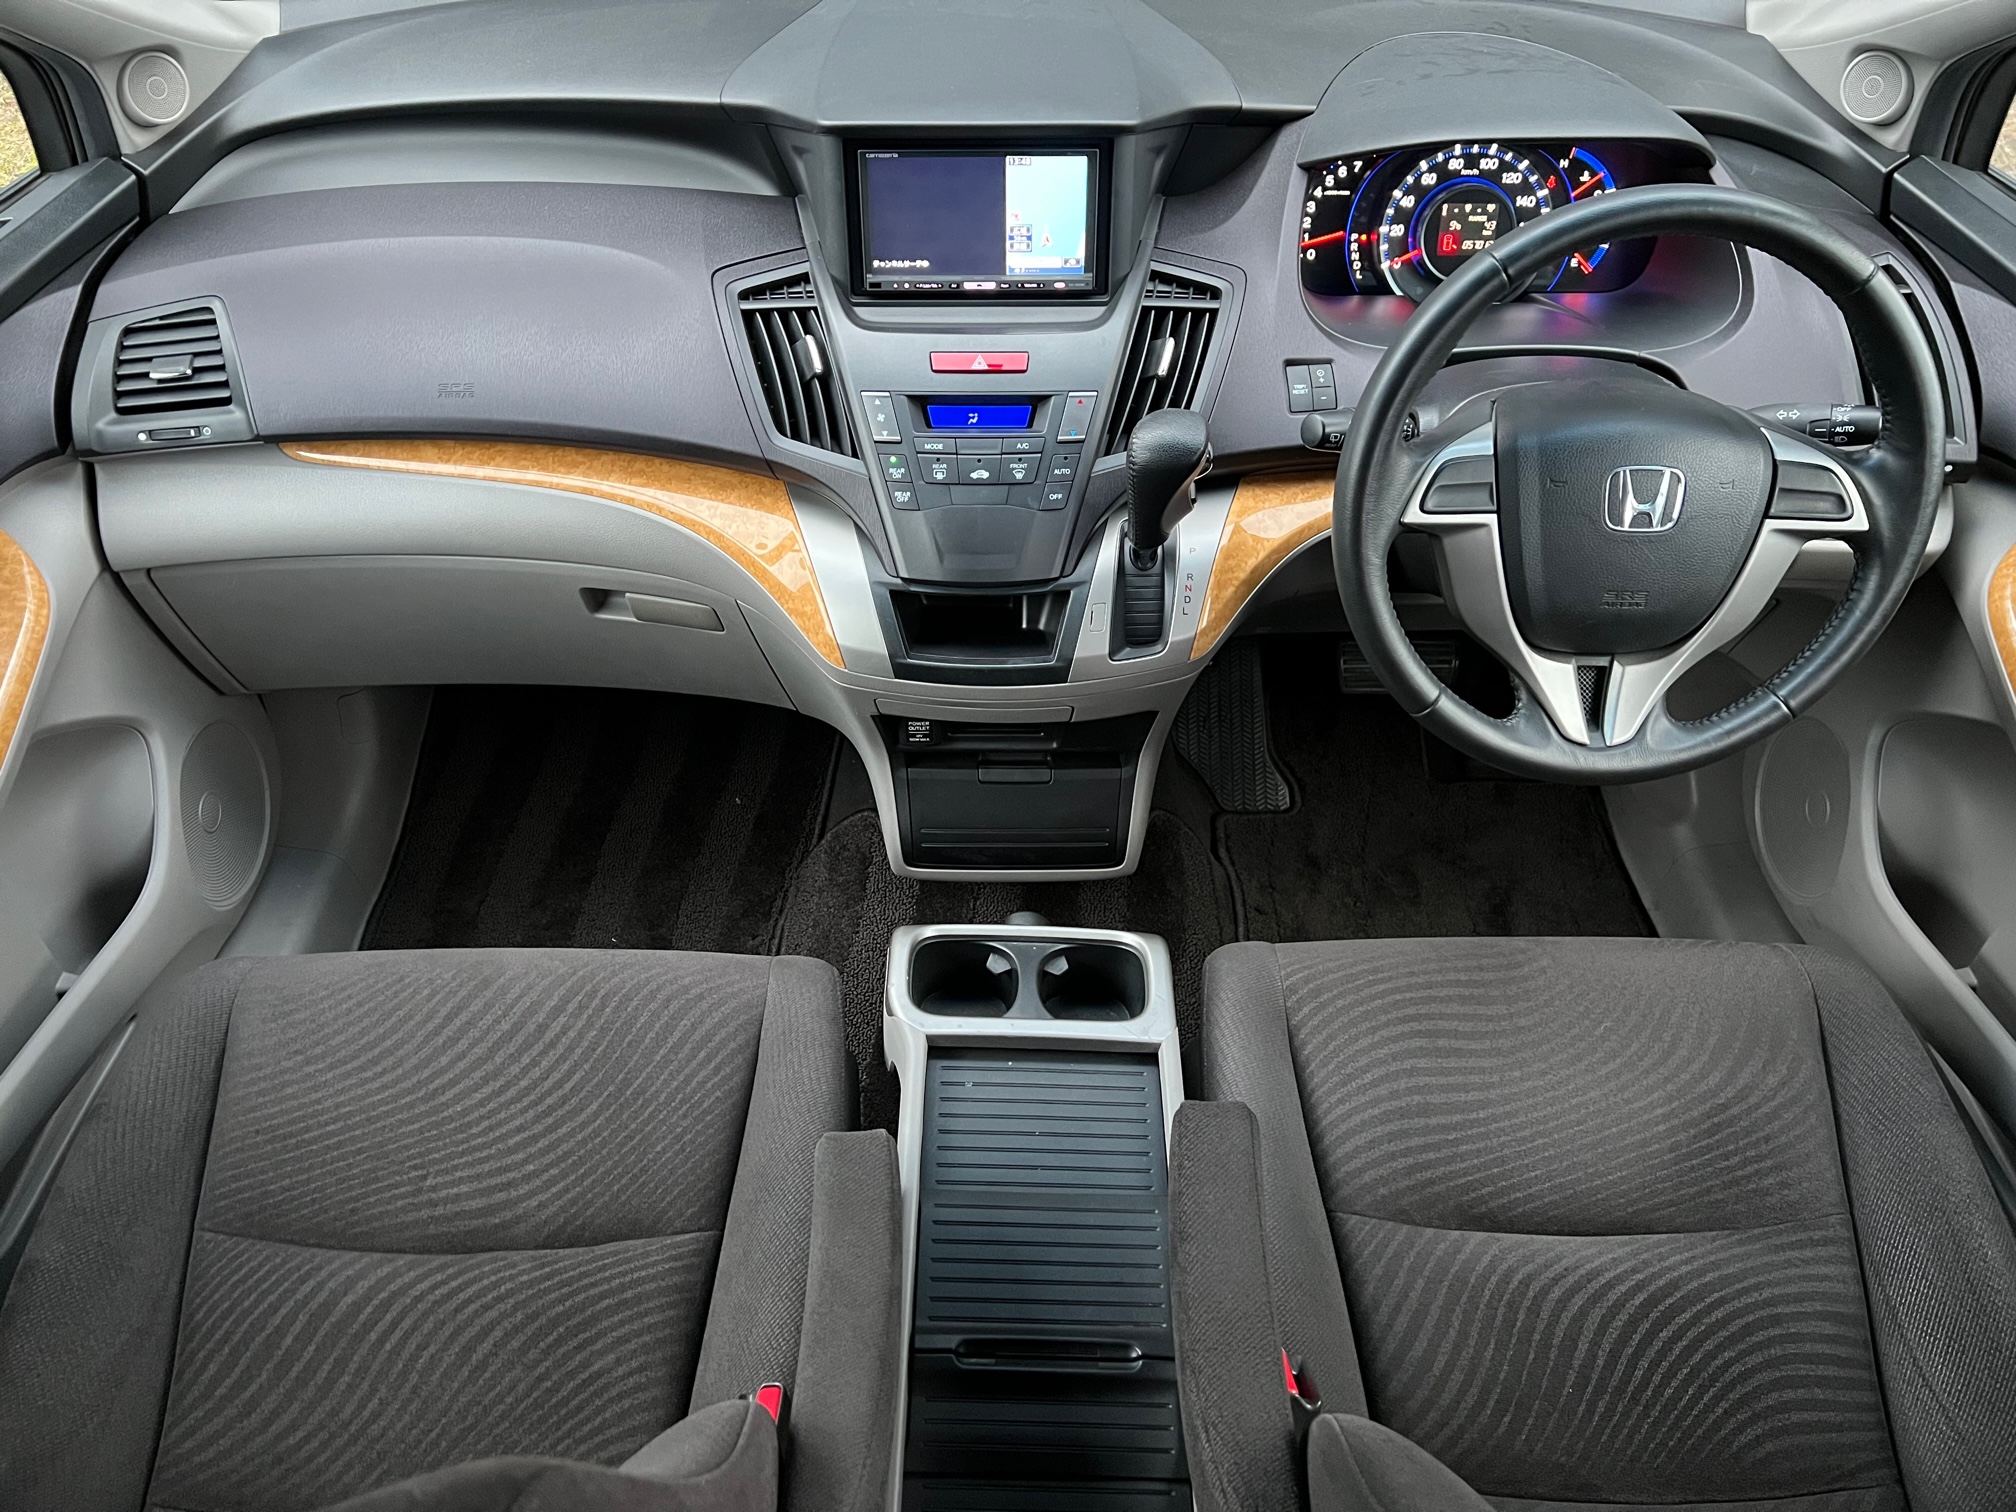 Honda Odyssey 2009 Image 14